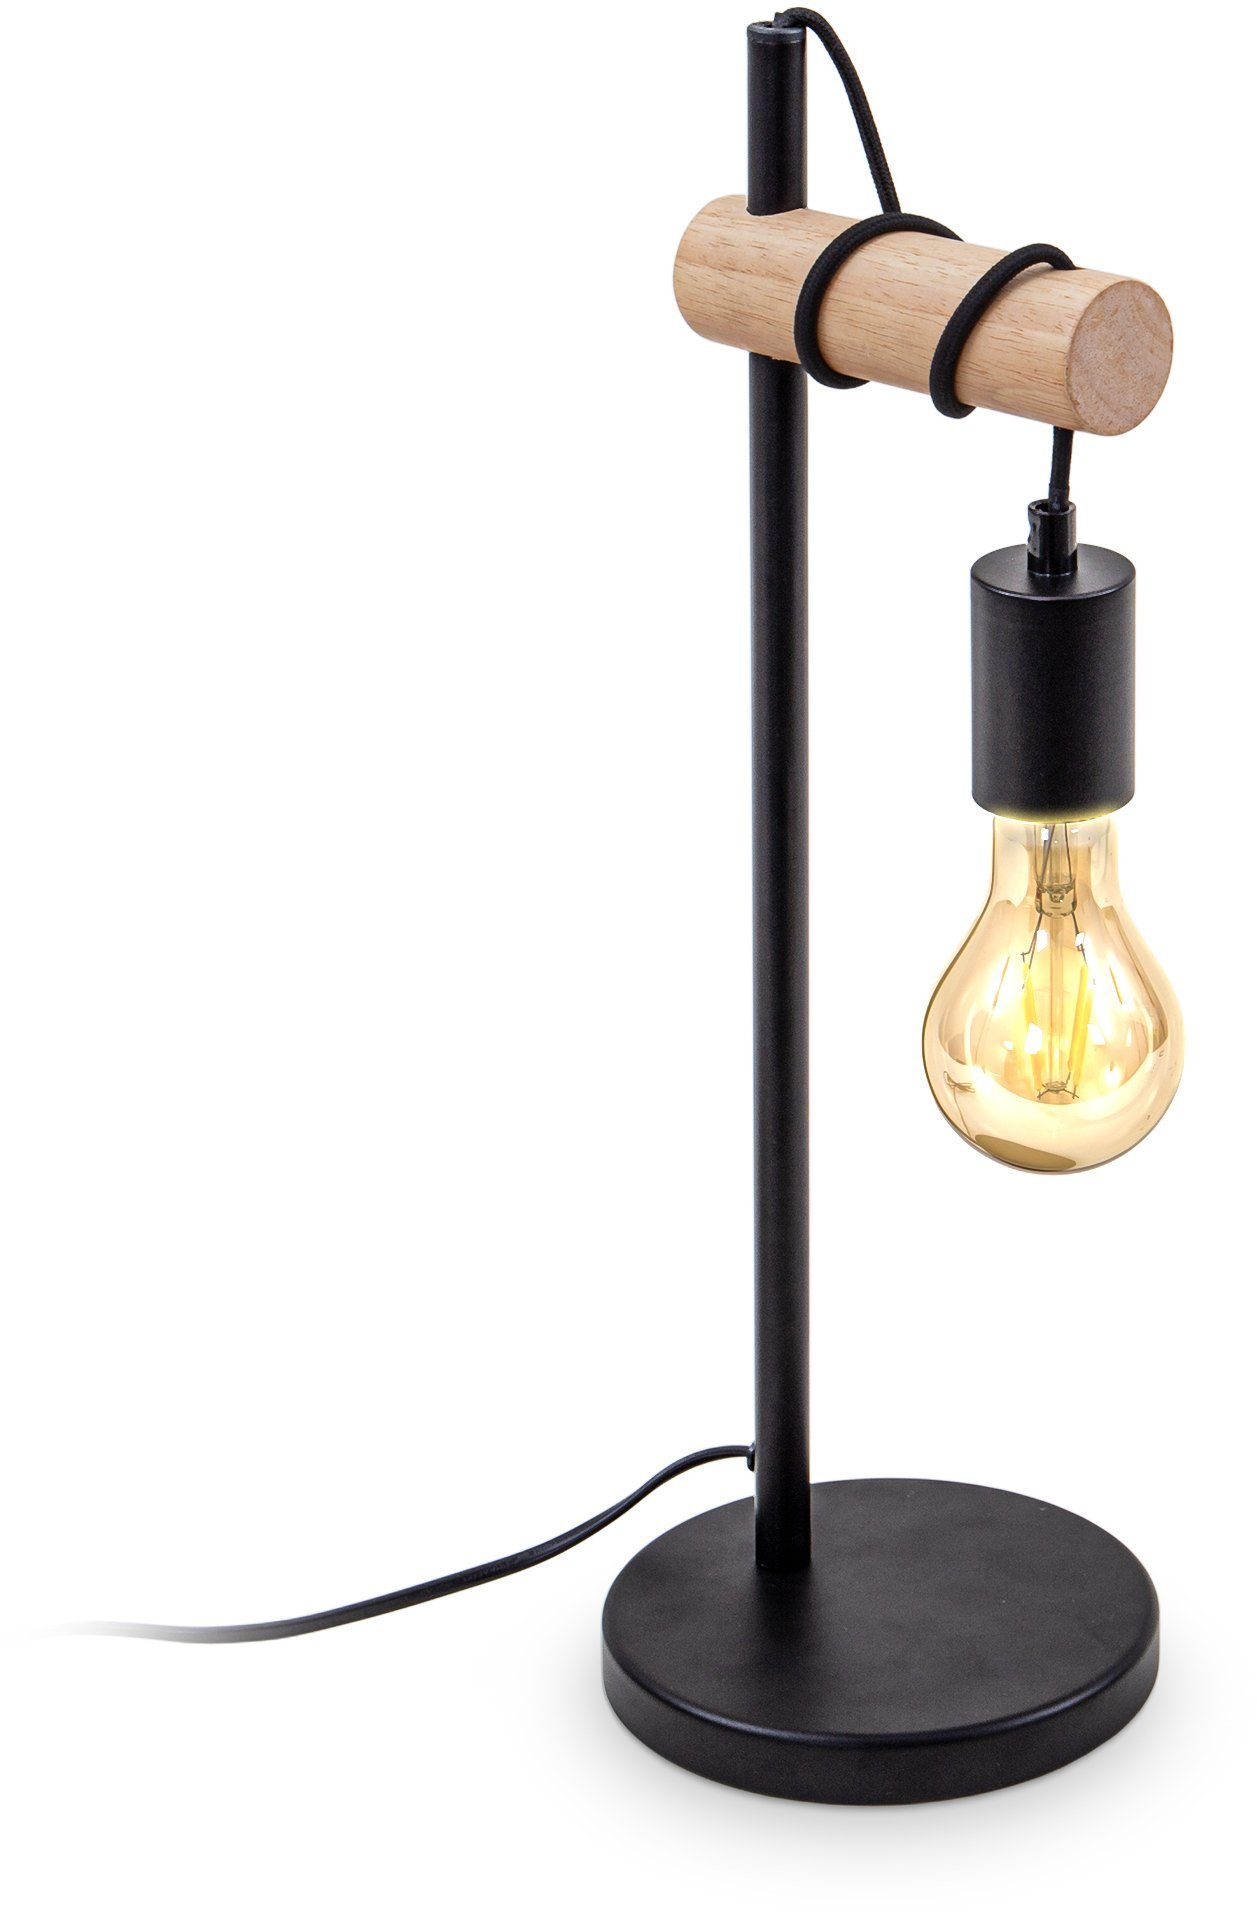 Tisch Leuchte Industrie-Stil Nacht-Licht Lese Lampe schwarz Glühbirnen-Design 